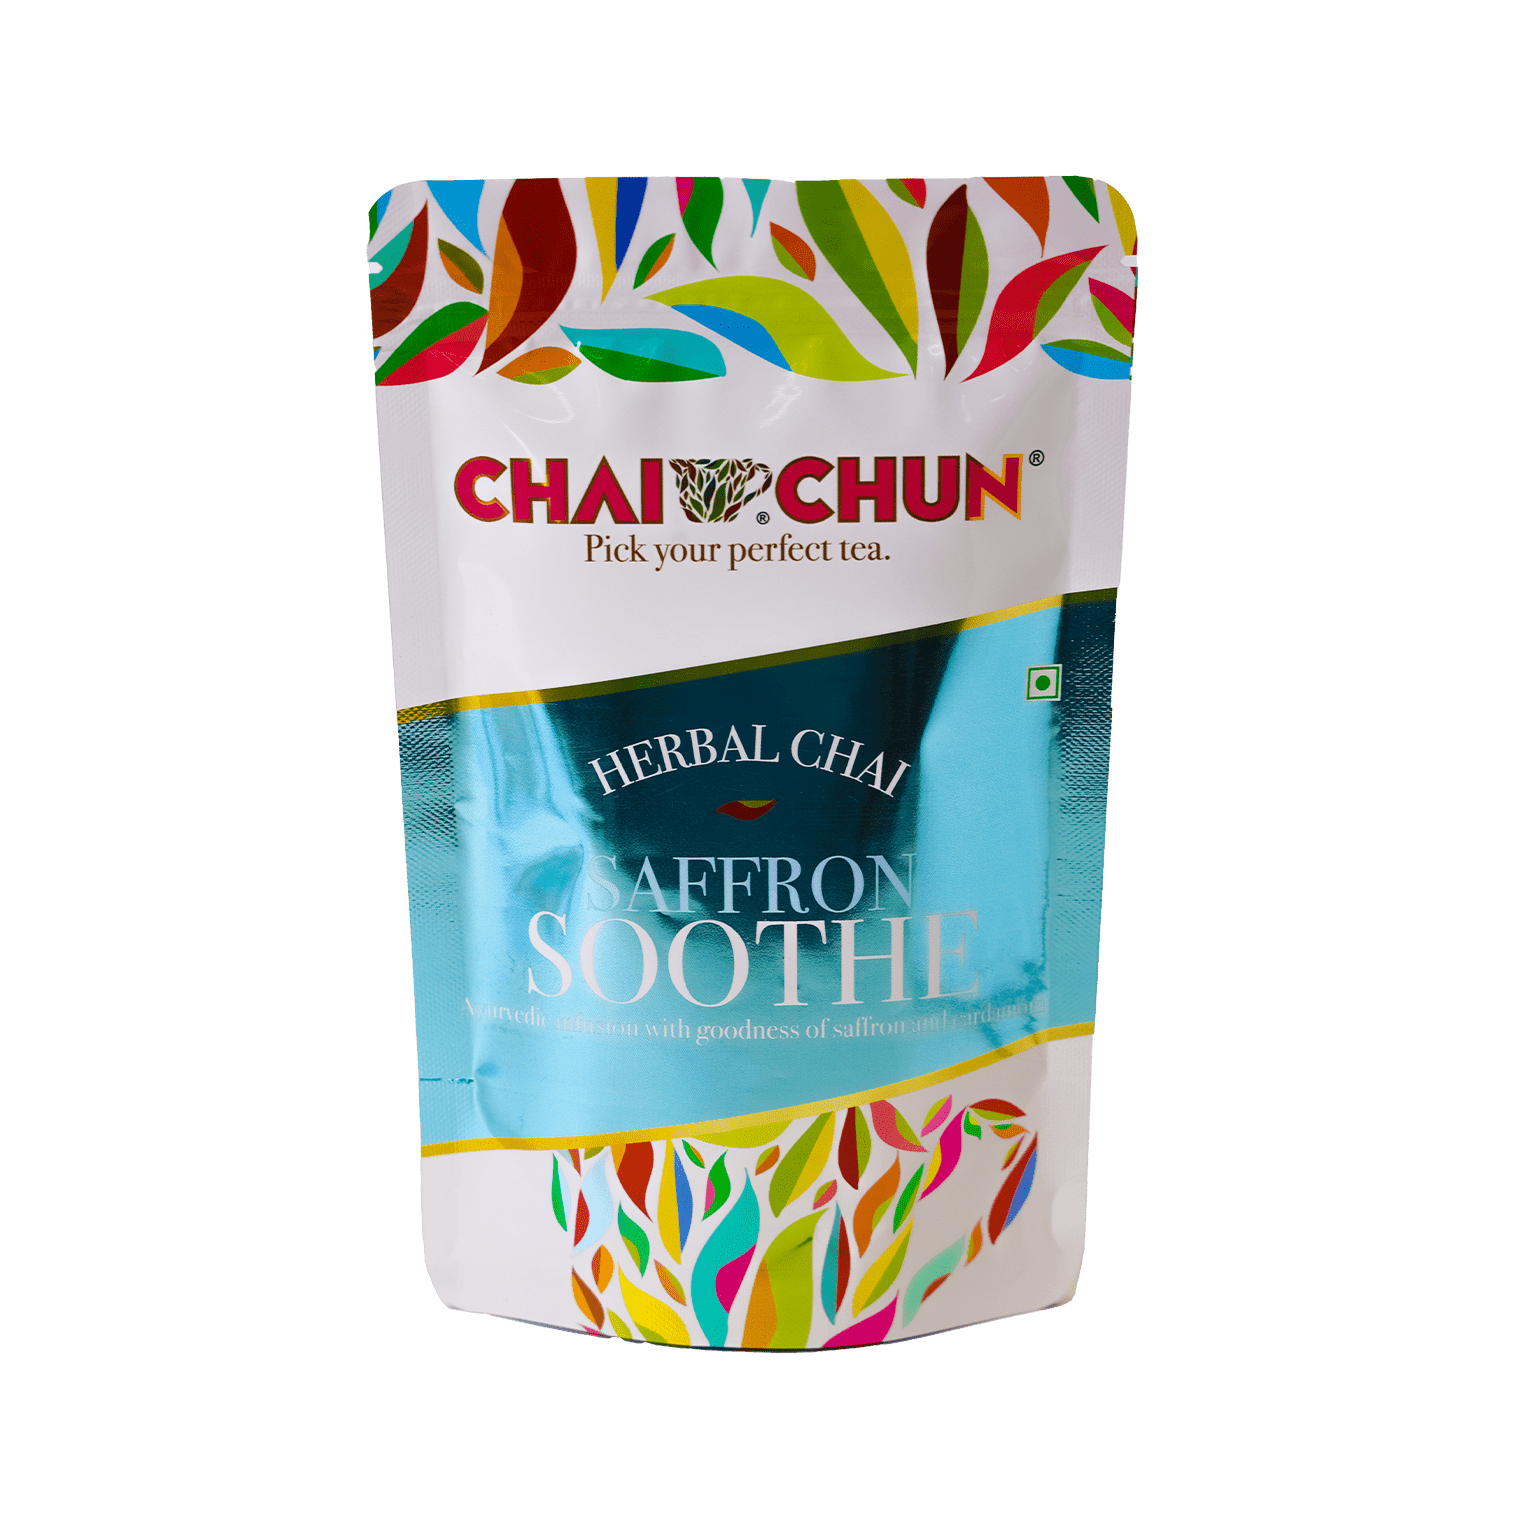 Saffron Soothe - Chai Chun